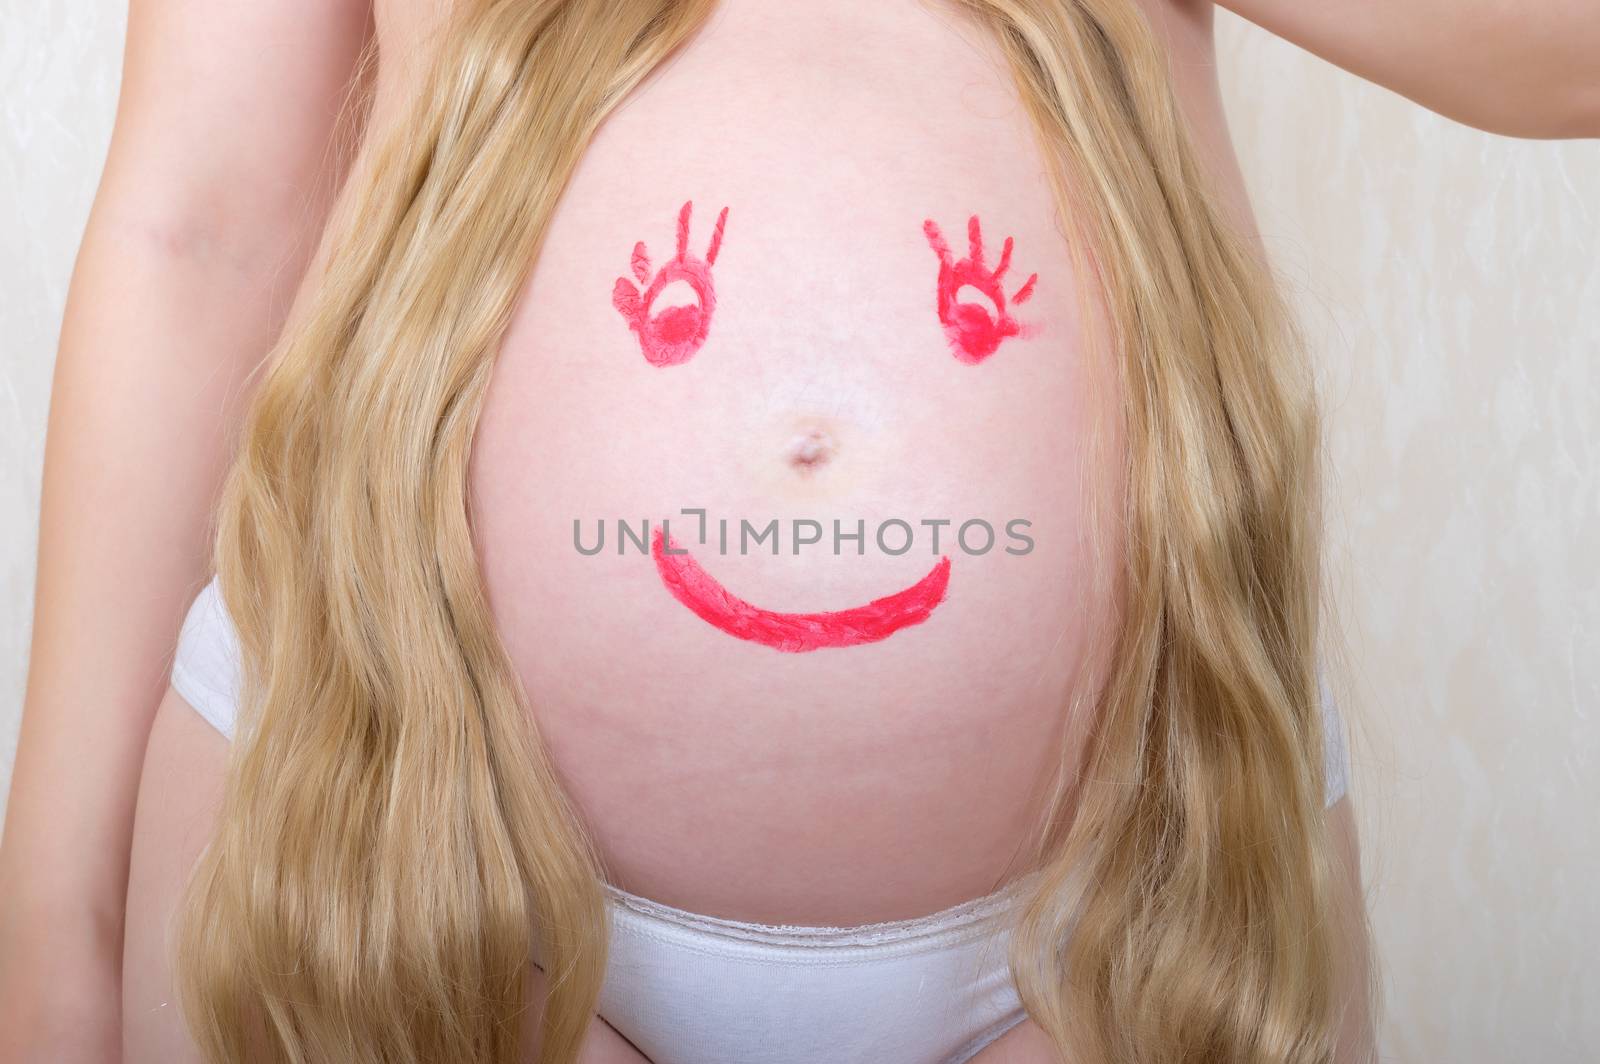 Belly of the expectant mother by kromeshnik